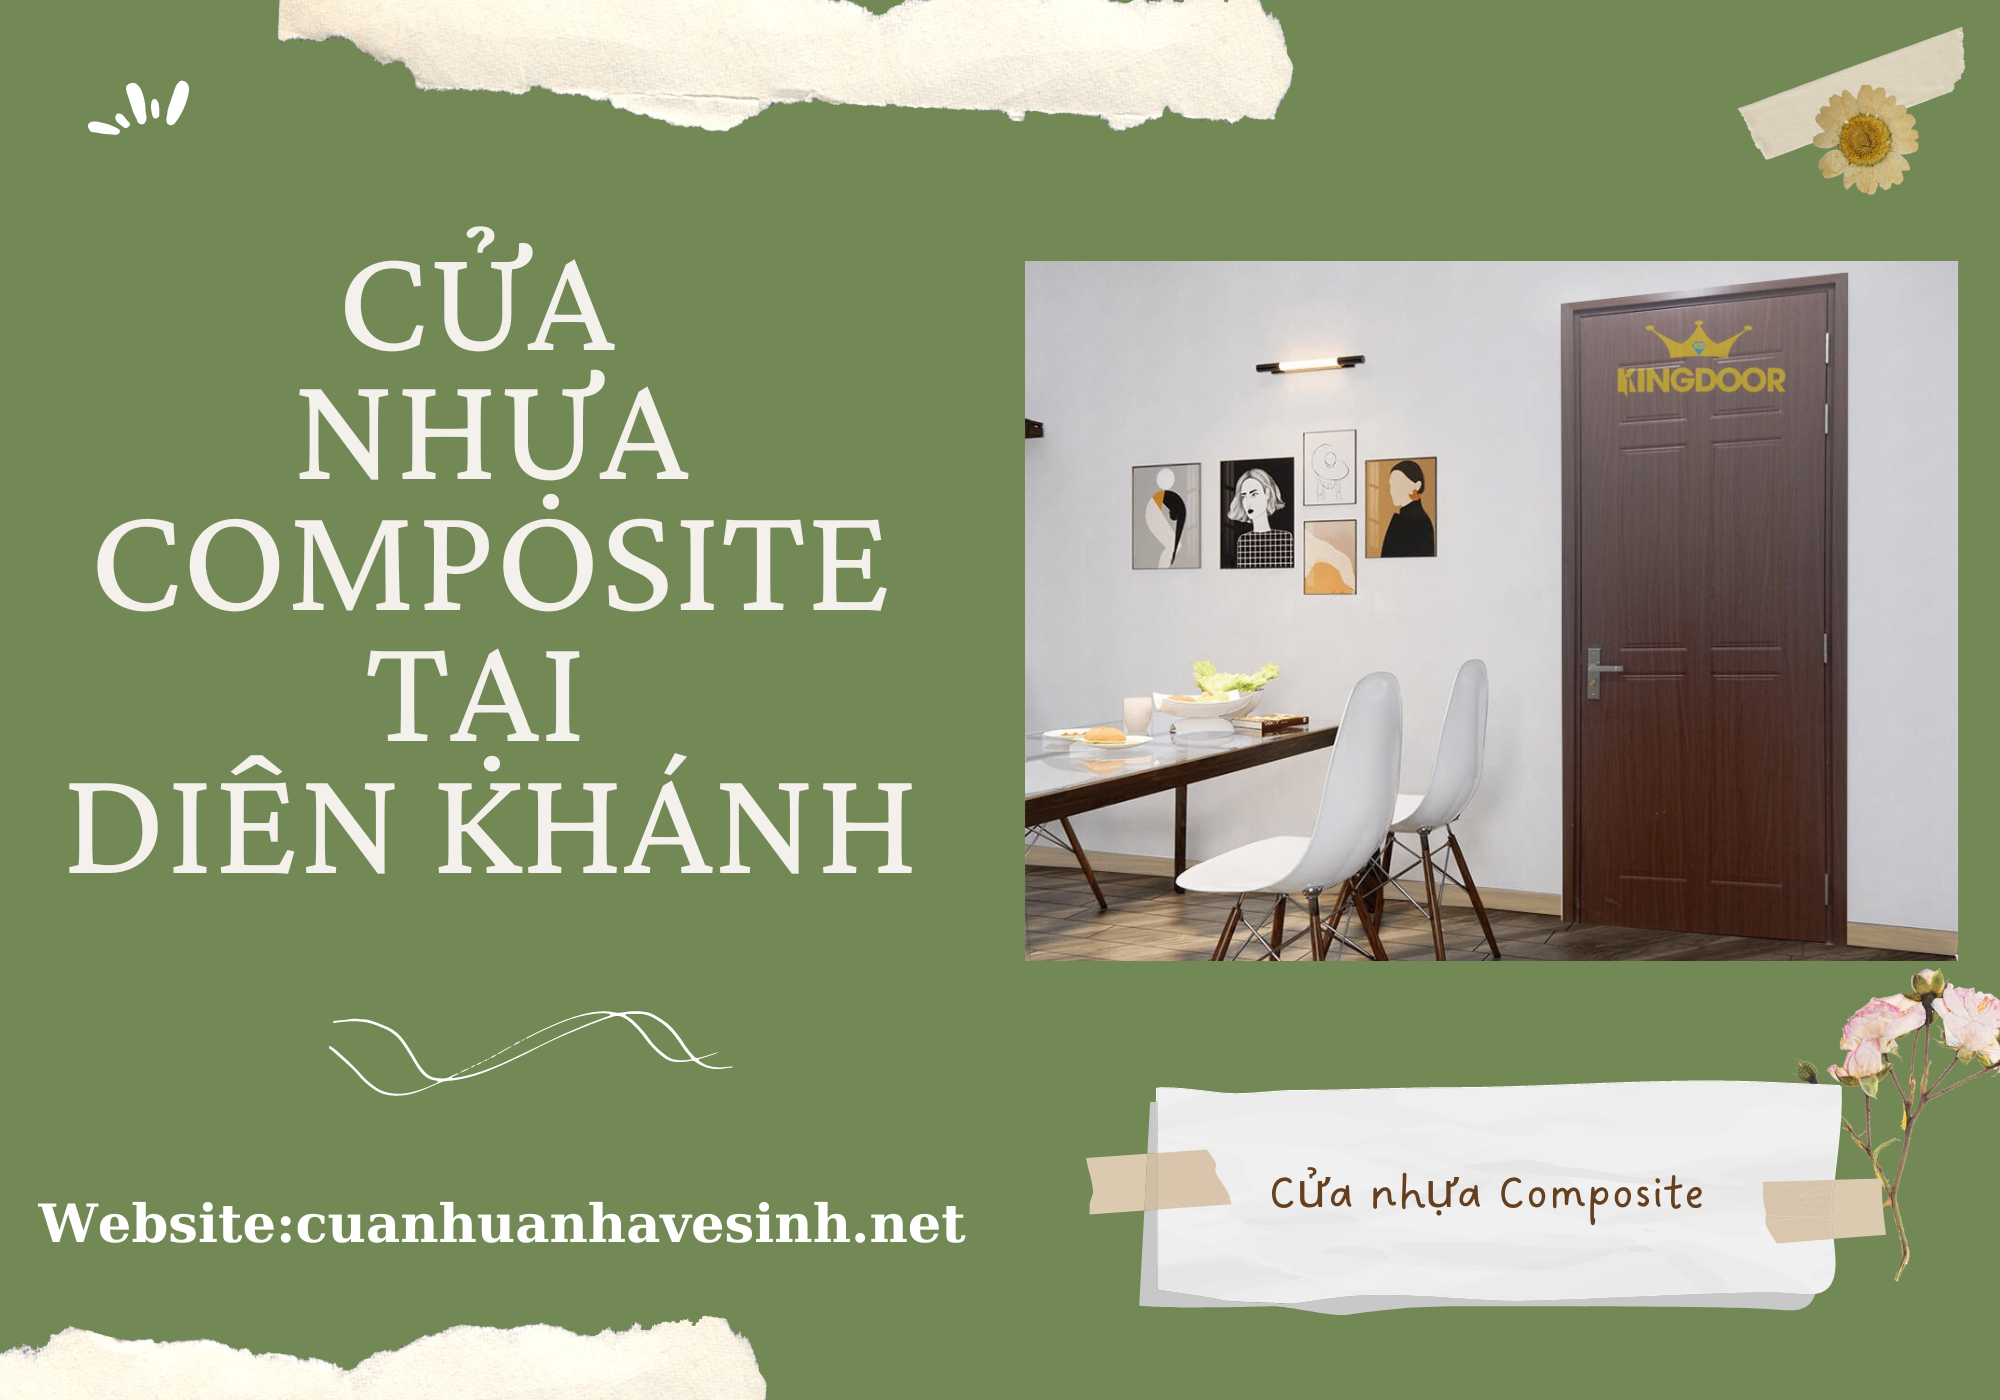 cua-nhua-composite-tai-dien-khanh